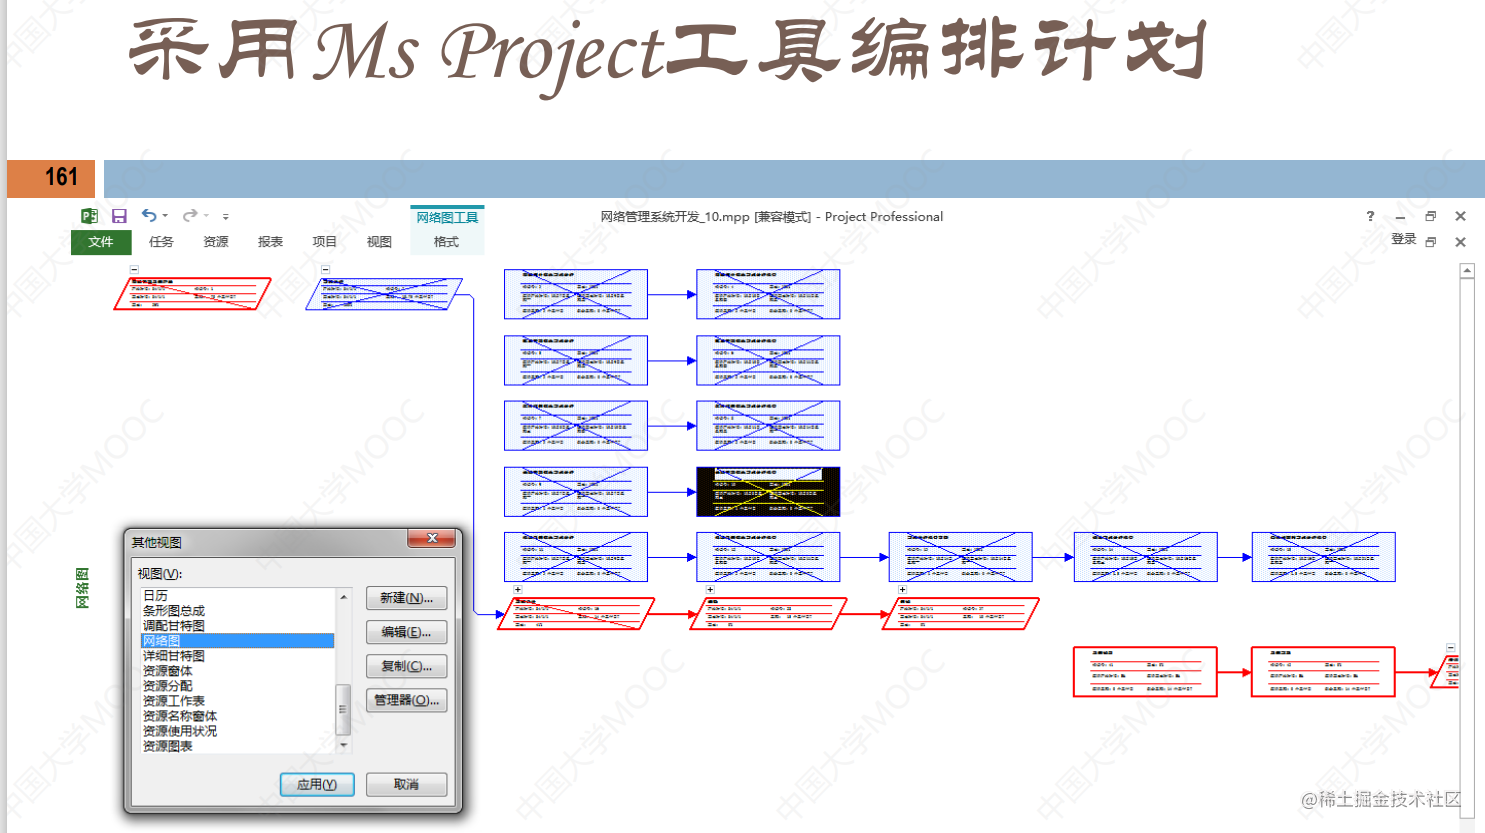 软件项目管理 7.5.项目进度模型（SPSP）「建议收藏」